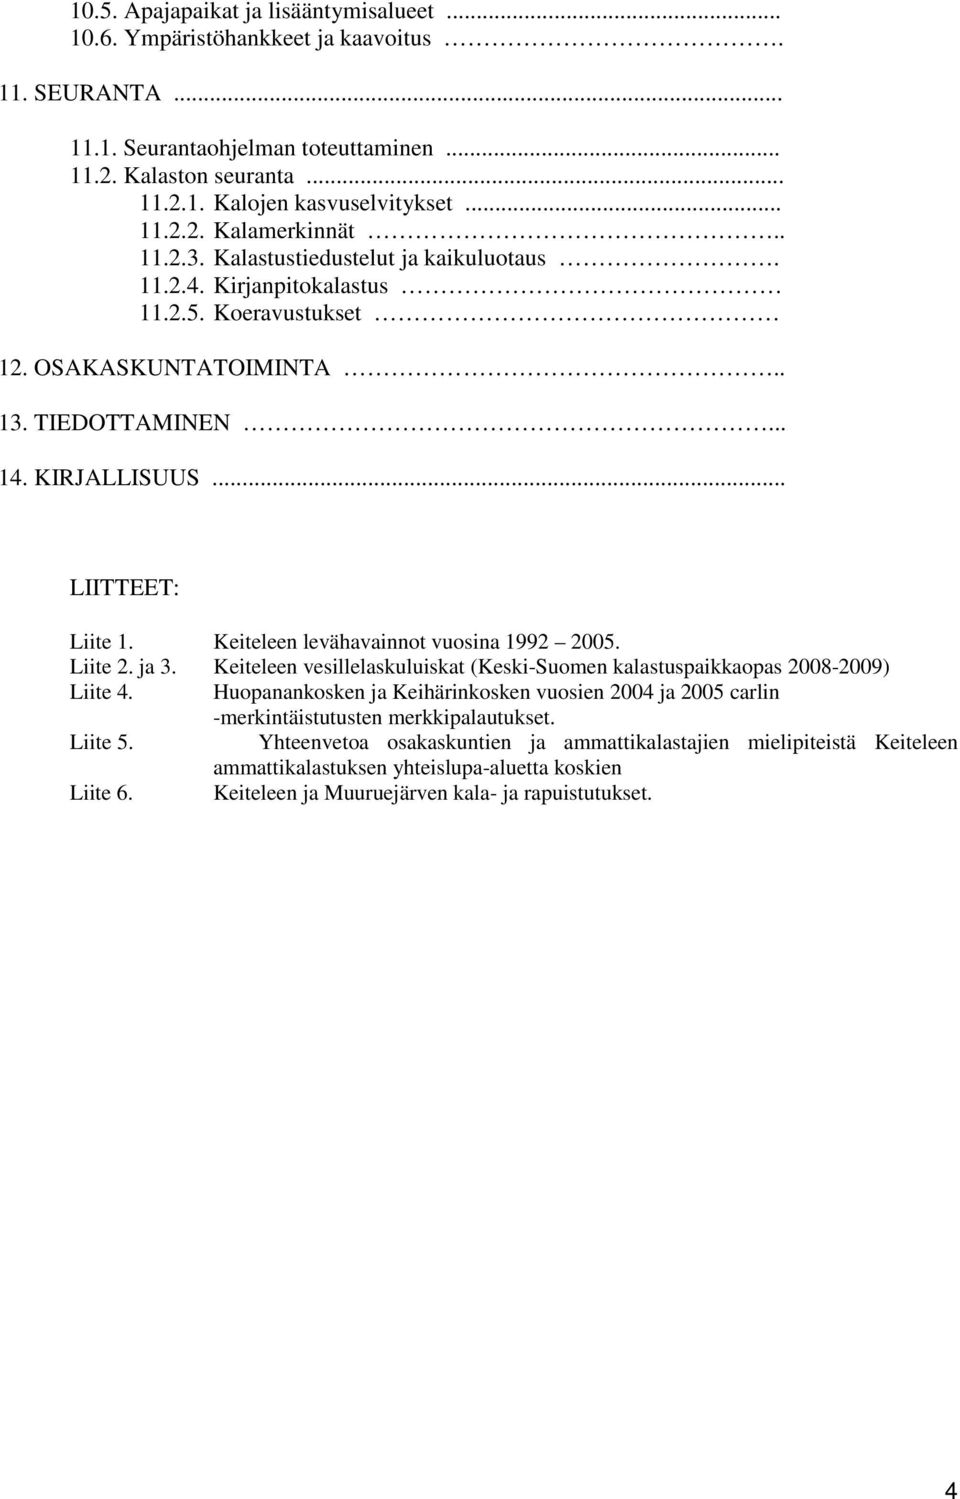 Keiteleen levähavainnot vuosina 1992 2005. Liite 2. ja 3. Keiteleen vesillelaskuluiskat (Keski-Suomen kalastuspaikkaopas 2008-2009) Liite 4.